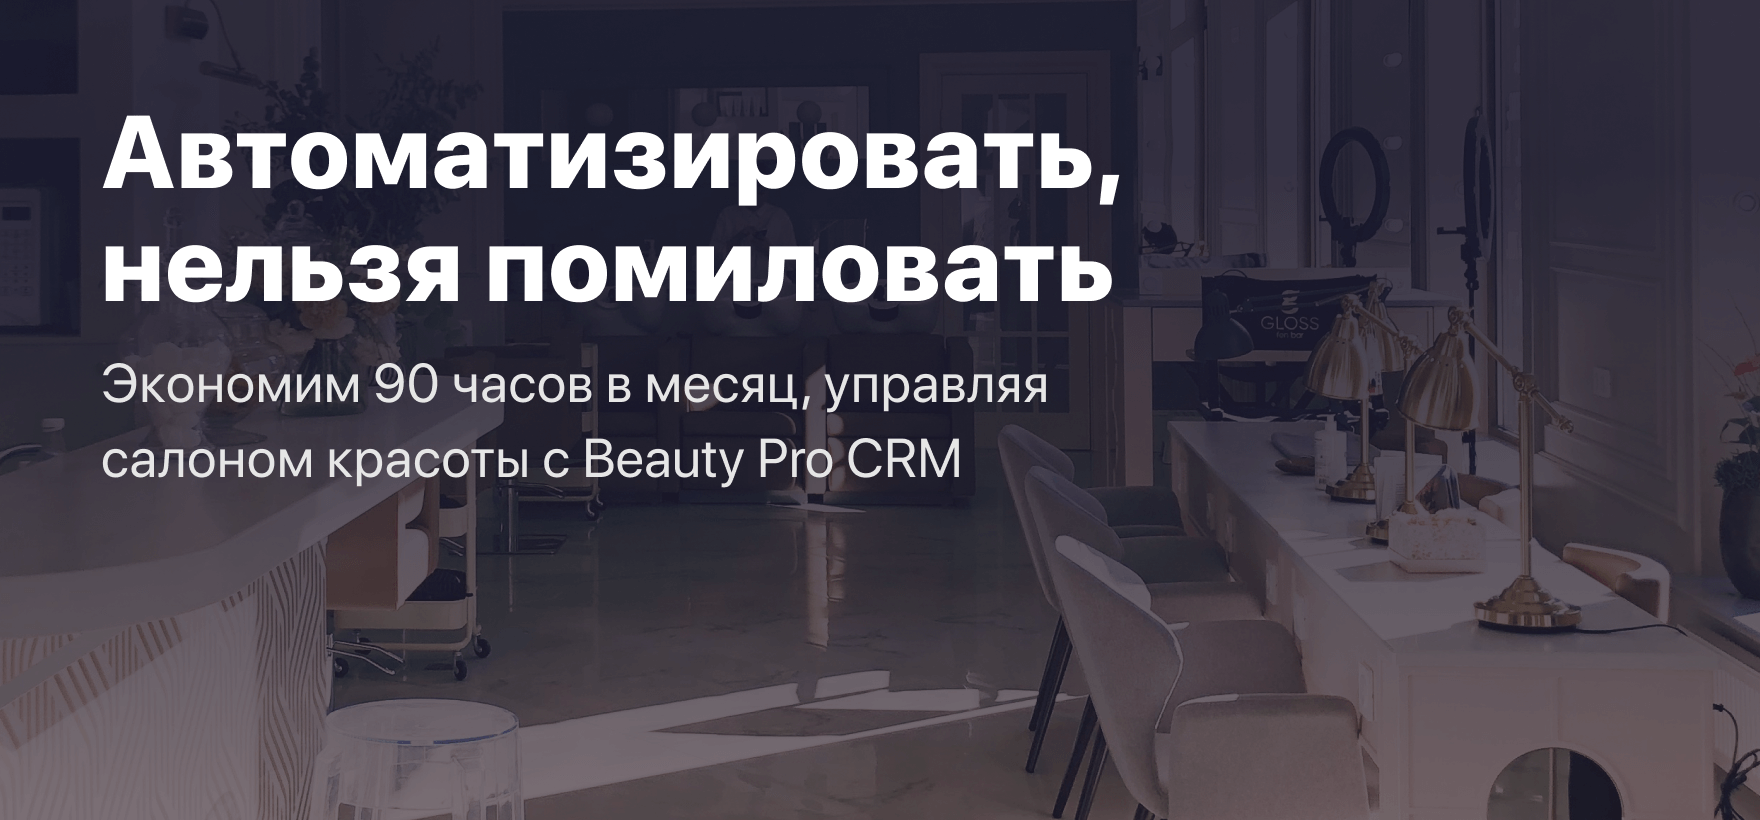 Автоматизировать, нельзя помиловать: Экономим 90 часов в месяц, управляя салоном красоты с Beauty Pro CRM